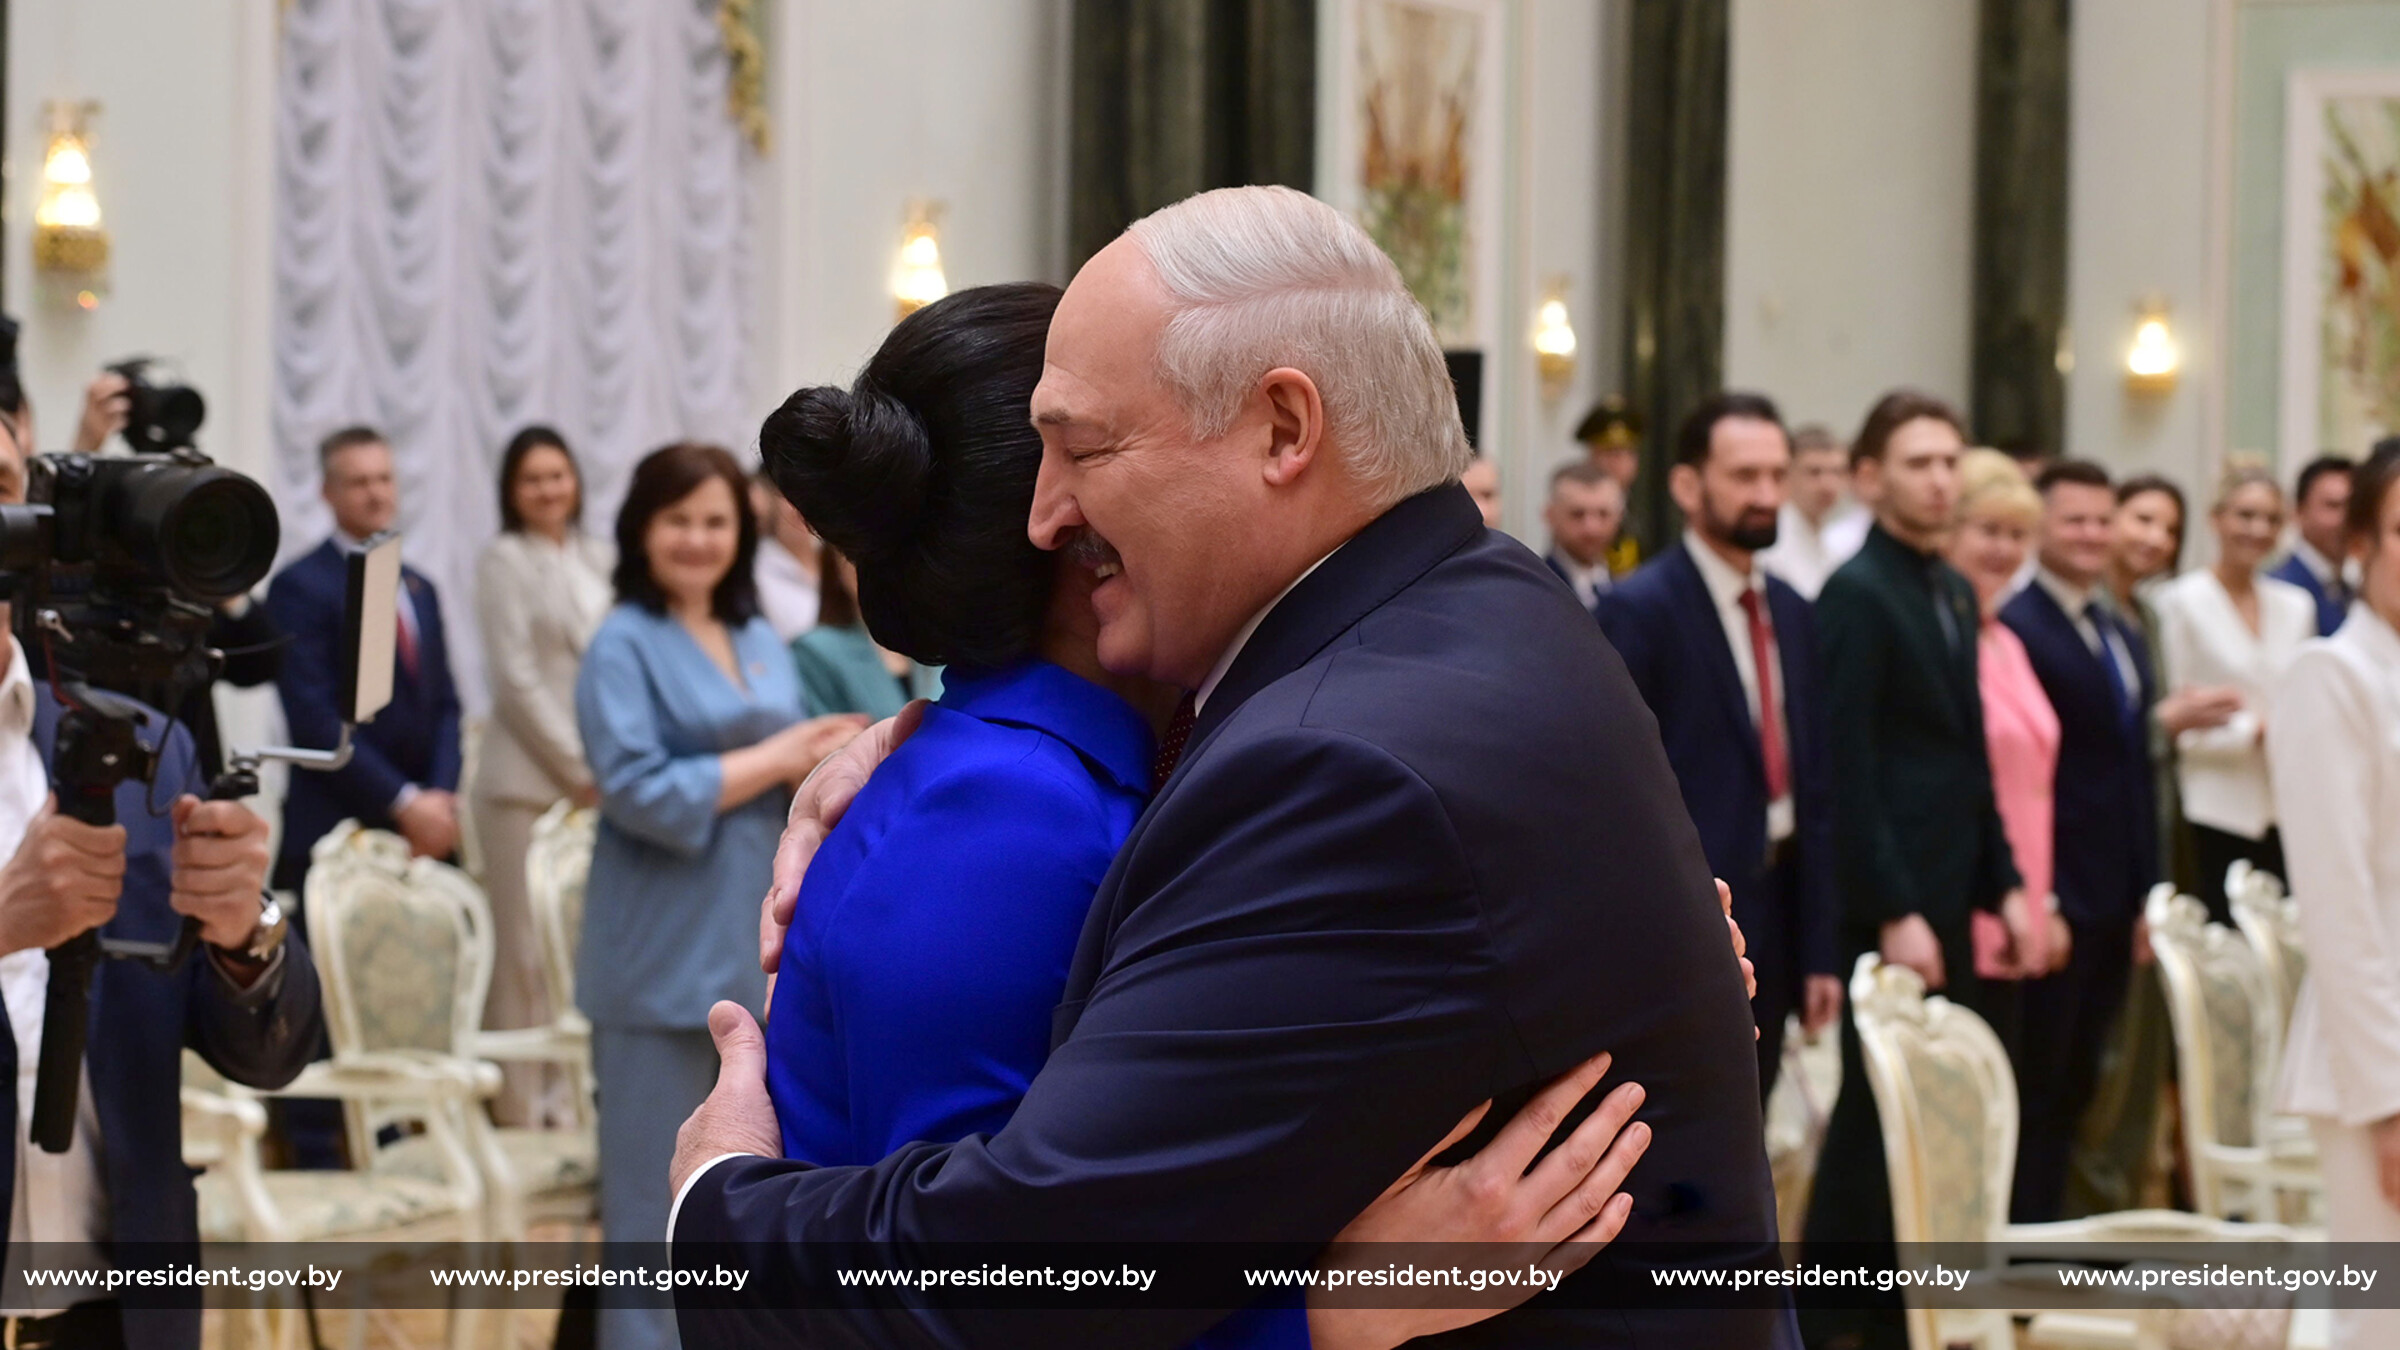 Почём герои для диктатора? Новые гагарины и жуковы Лукашенко не нужны и опасны